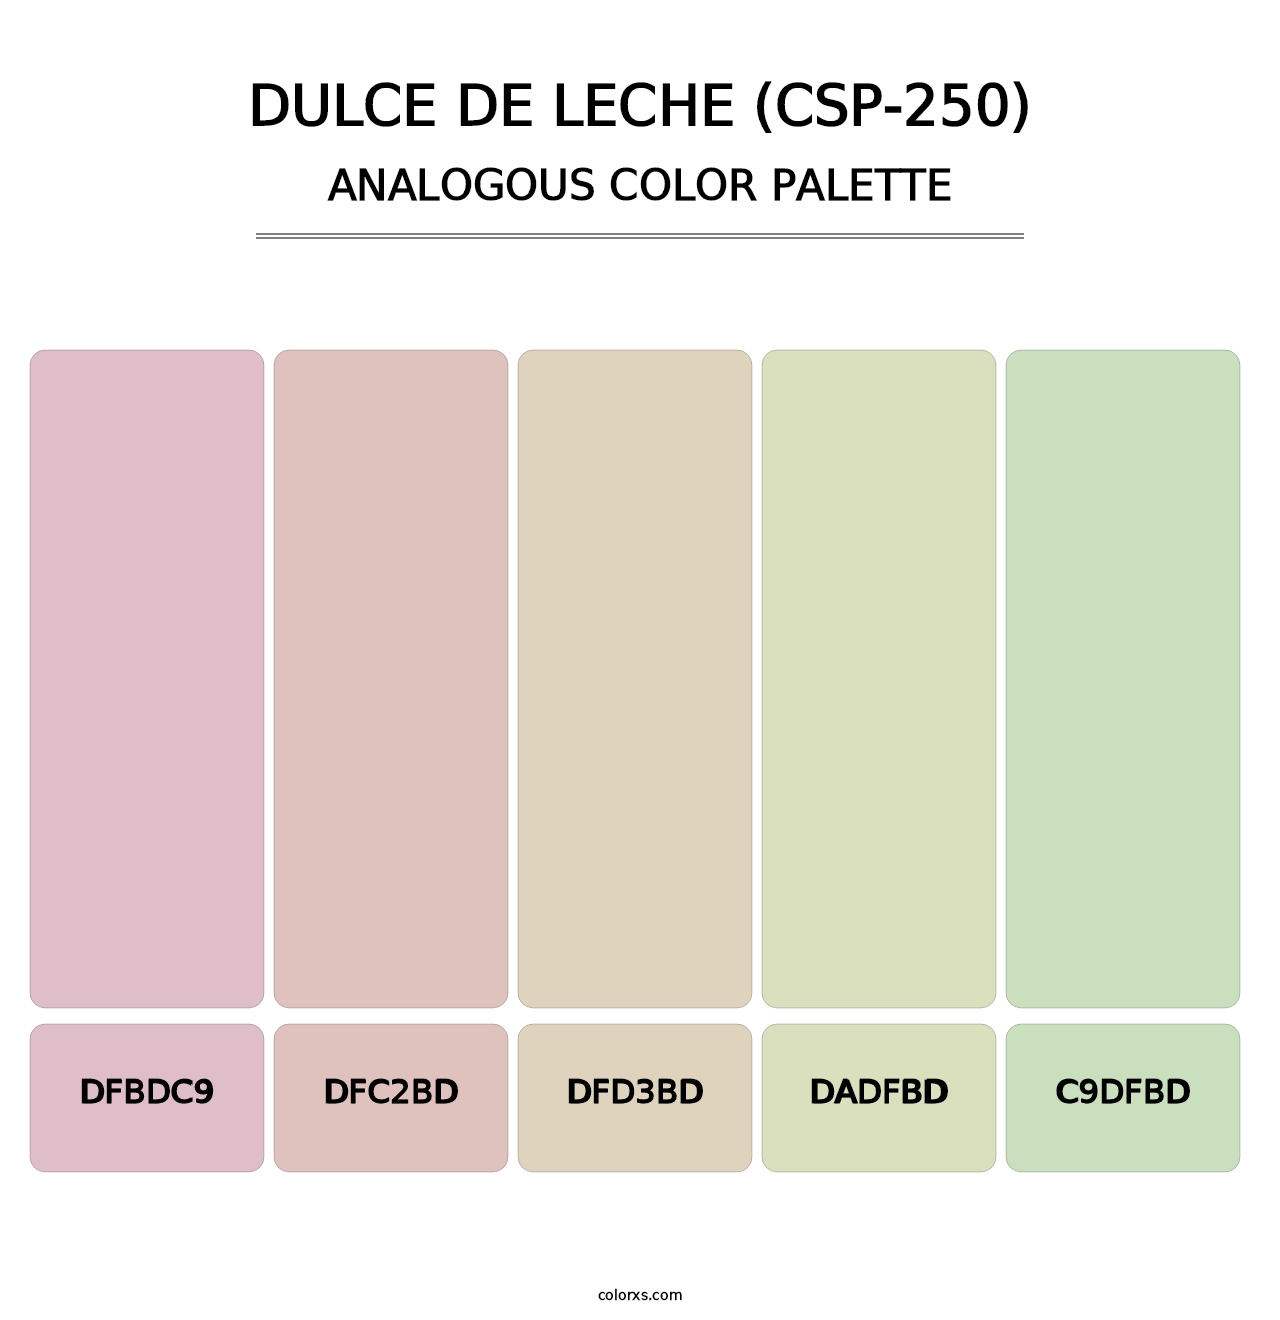 Dulce de Leche (CSP-250) - Analogous Color Palette